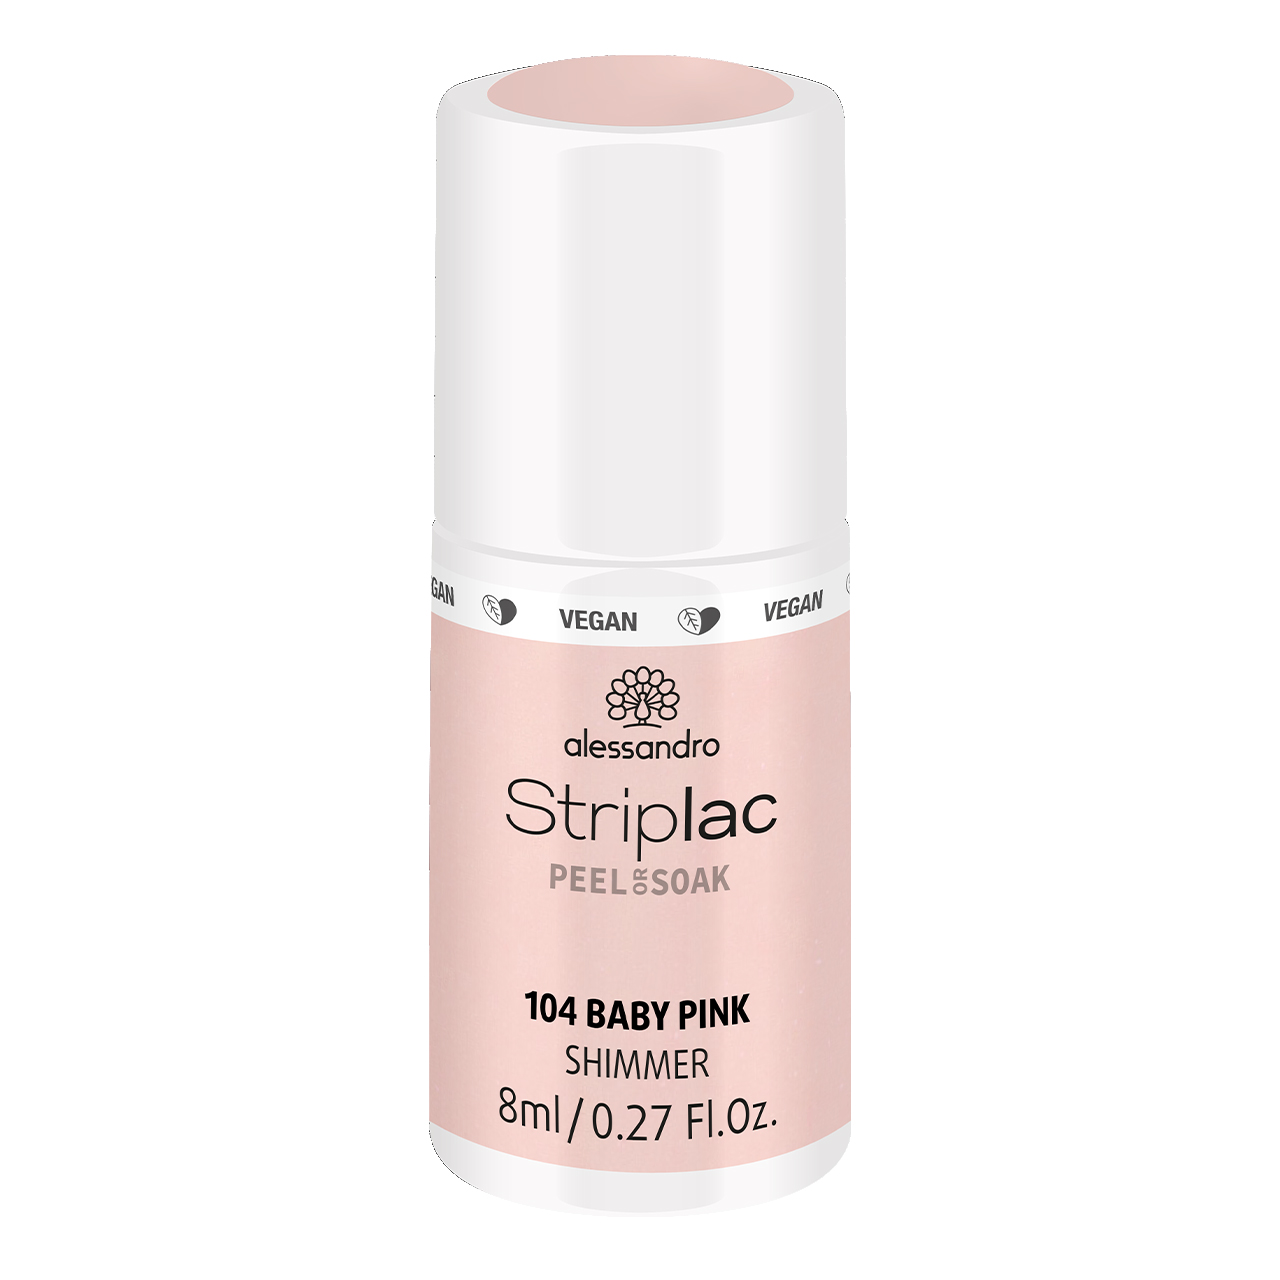 Striplac Peel or Soak Baby Pink